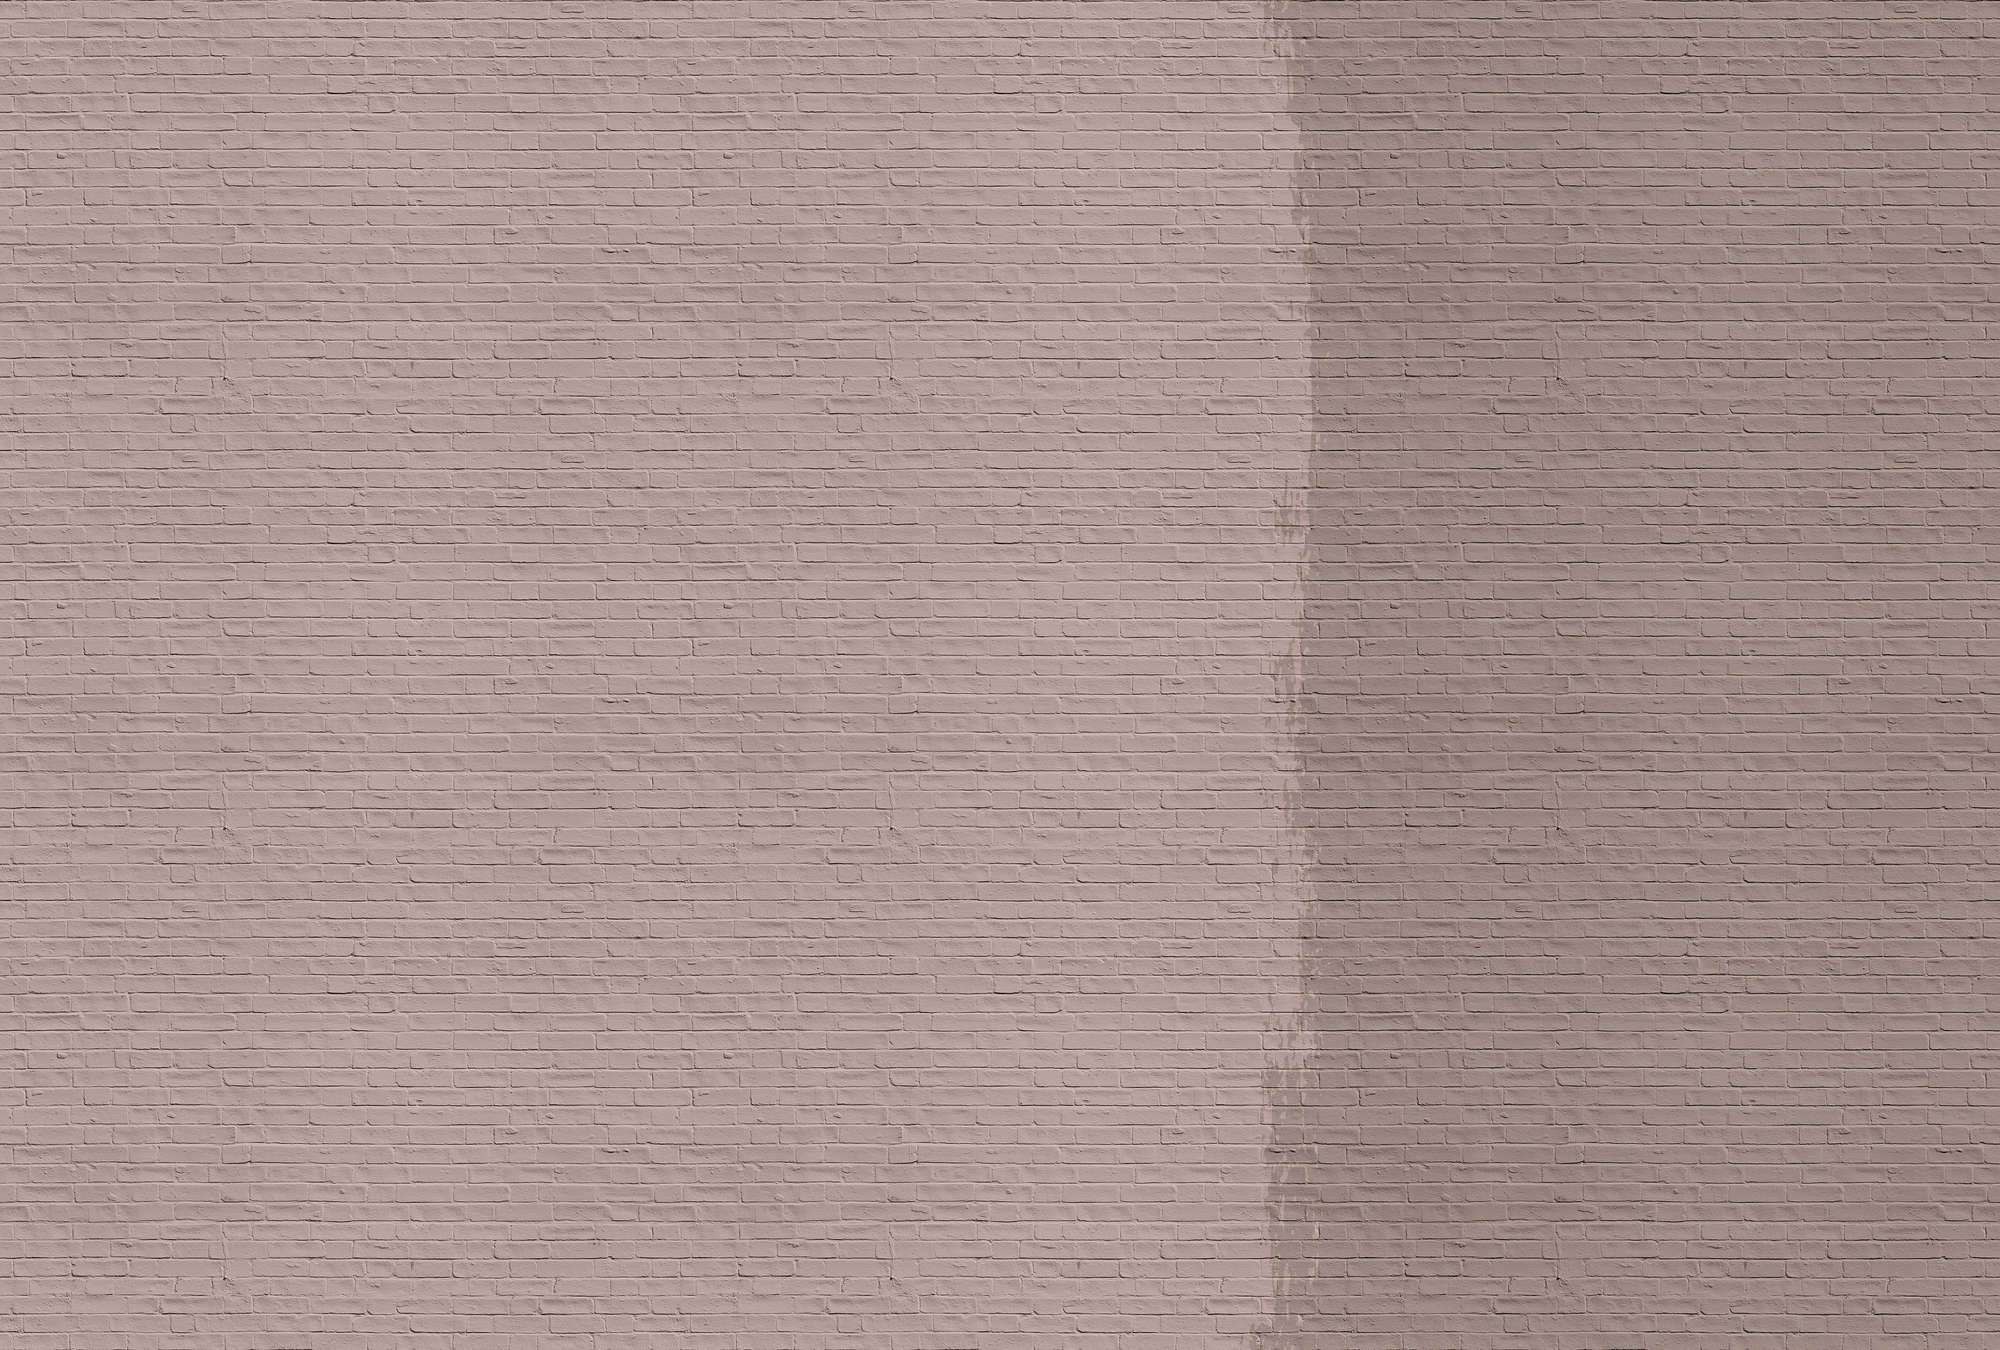             Tainted love 2 - Fotomurali con muro di mattoni dipinti - Rosa, Taupe | Texture tessuto non tessuto
        